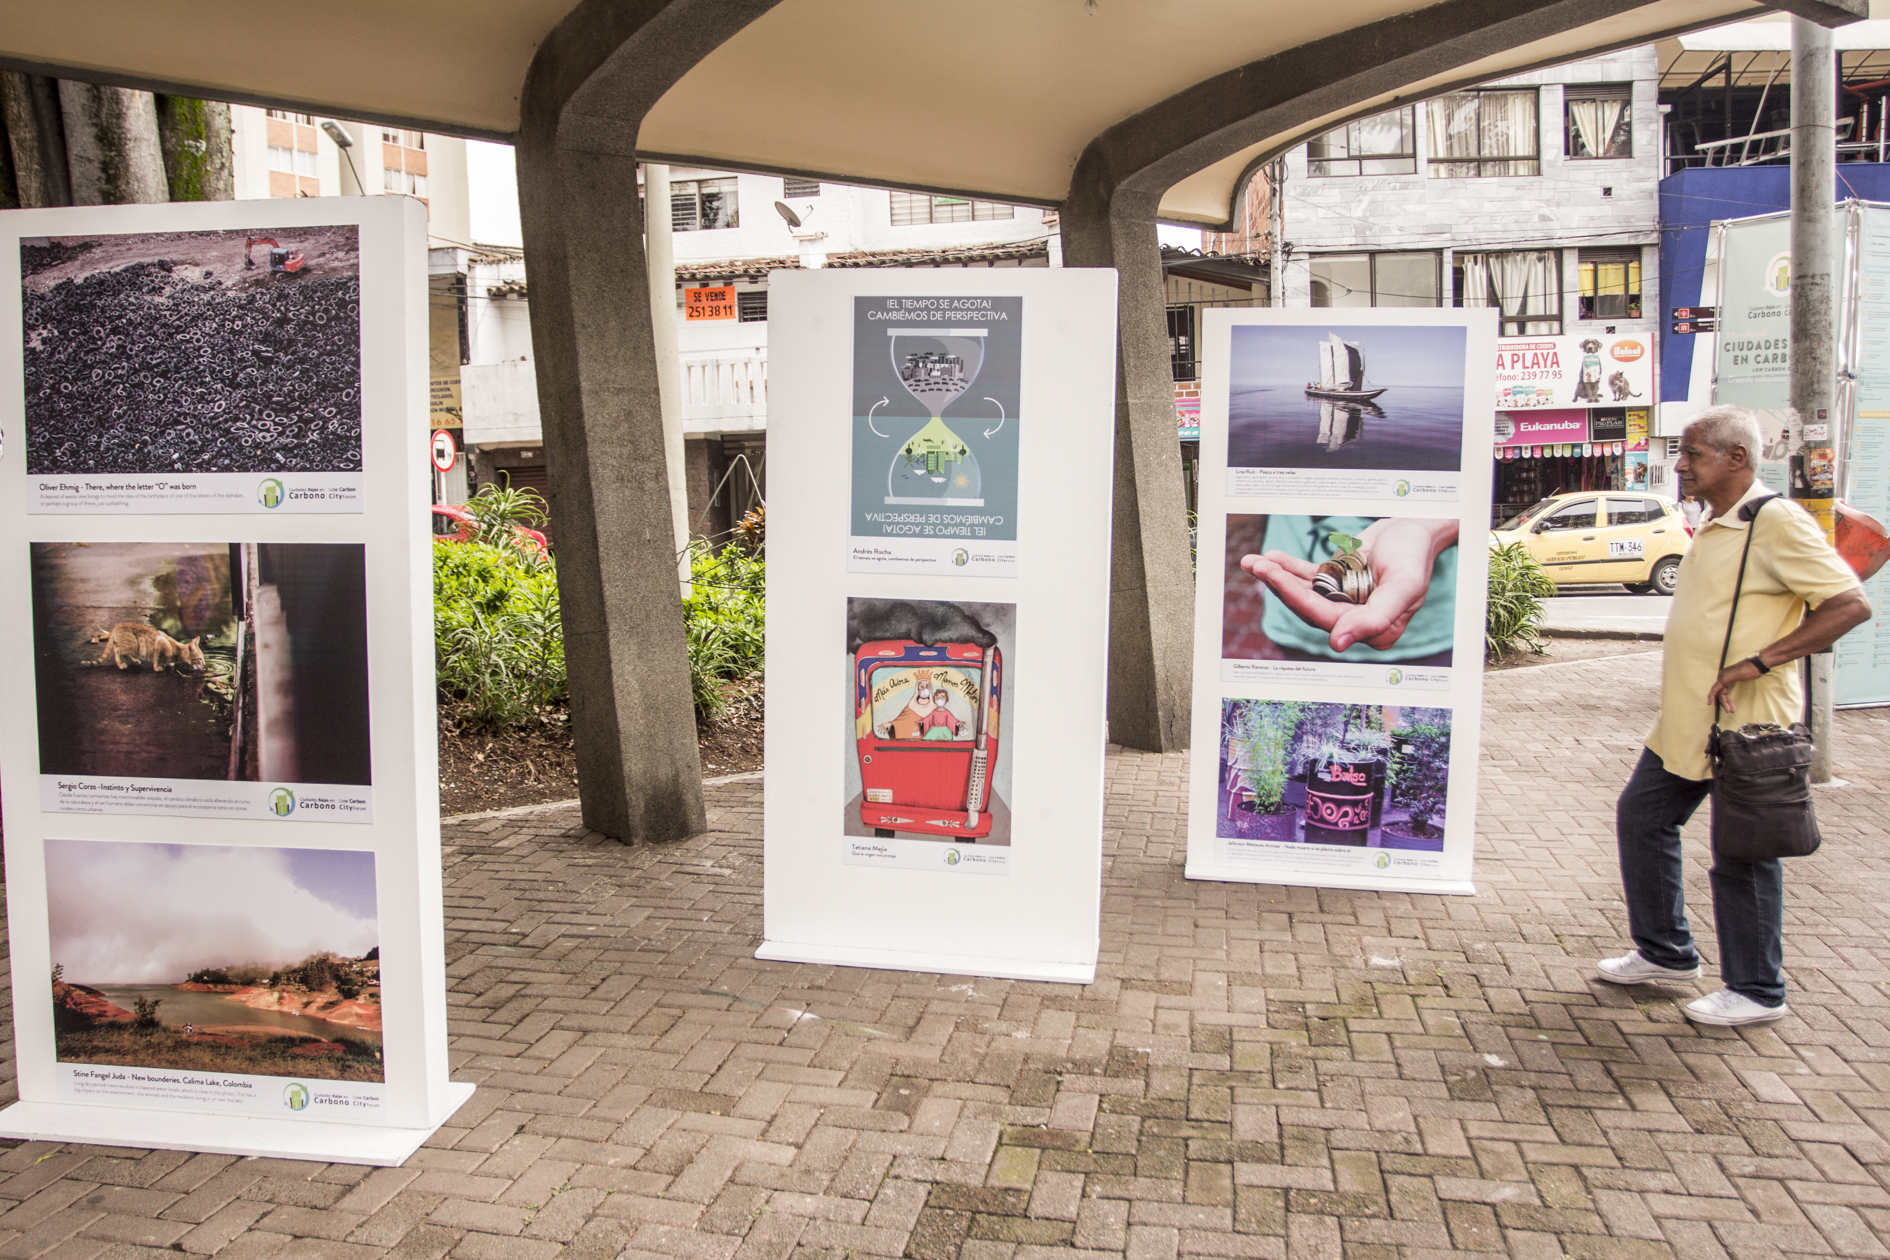 En la imagen, una exposición en Medellín intenta concienciar a los ciudadanos sobre el potencial de las urbes contra el cambio climático